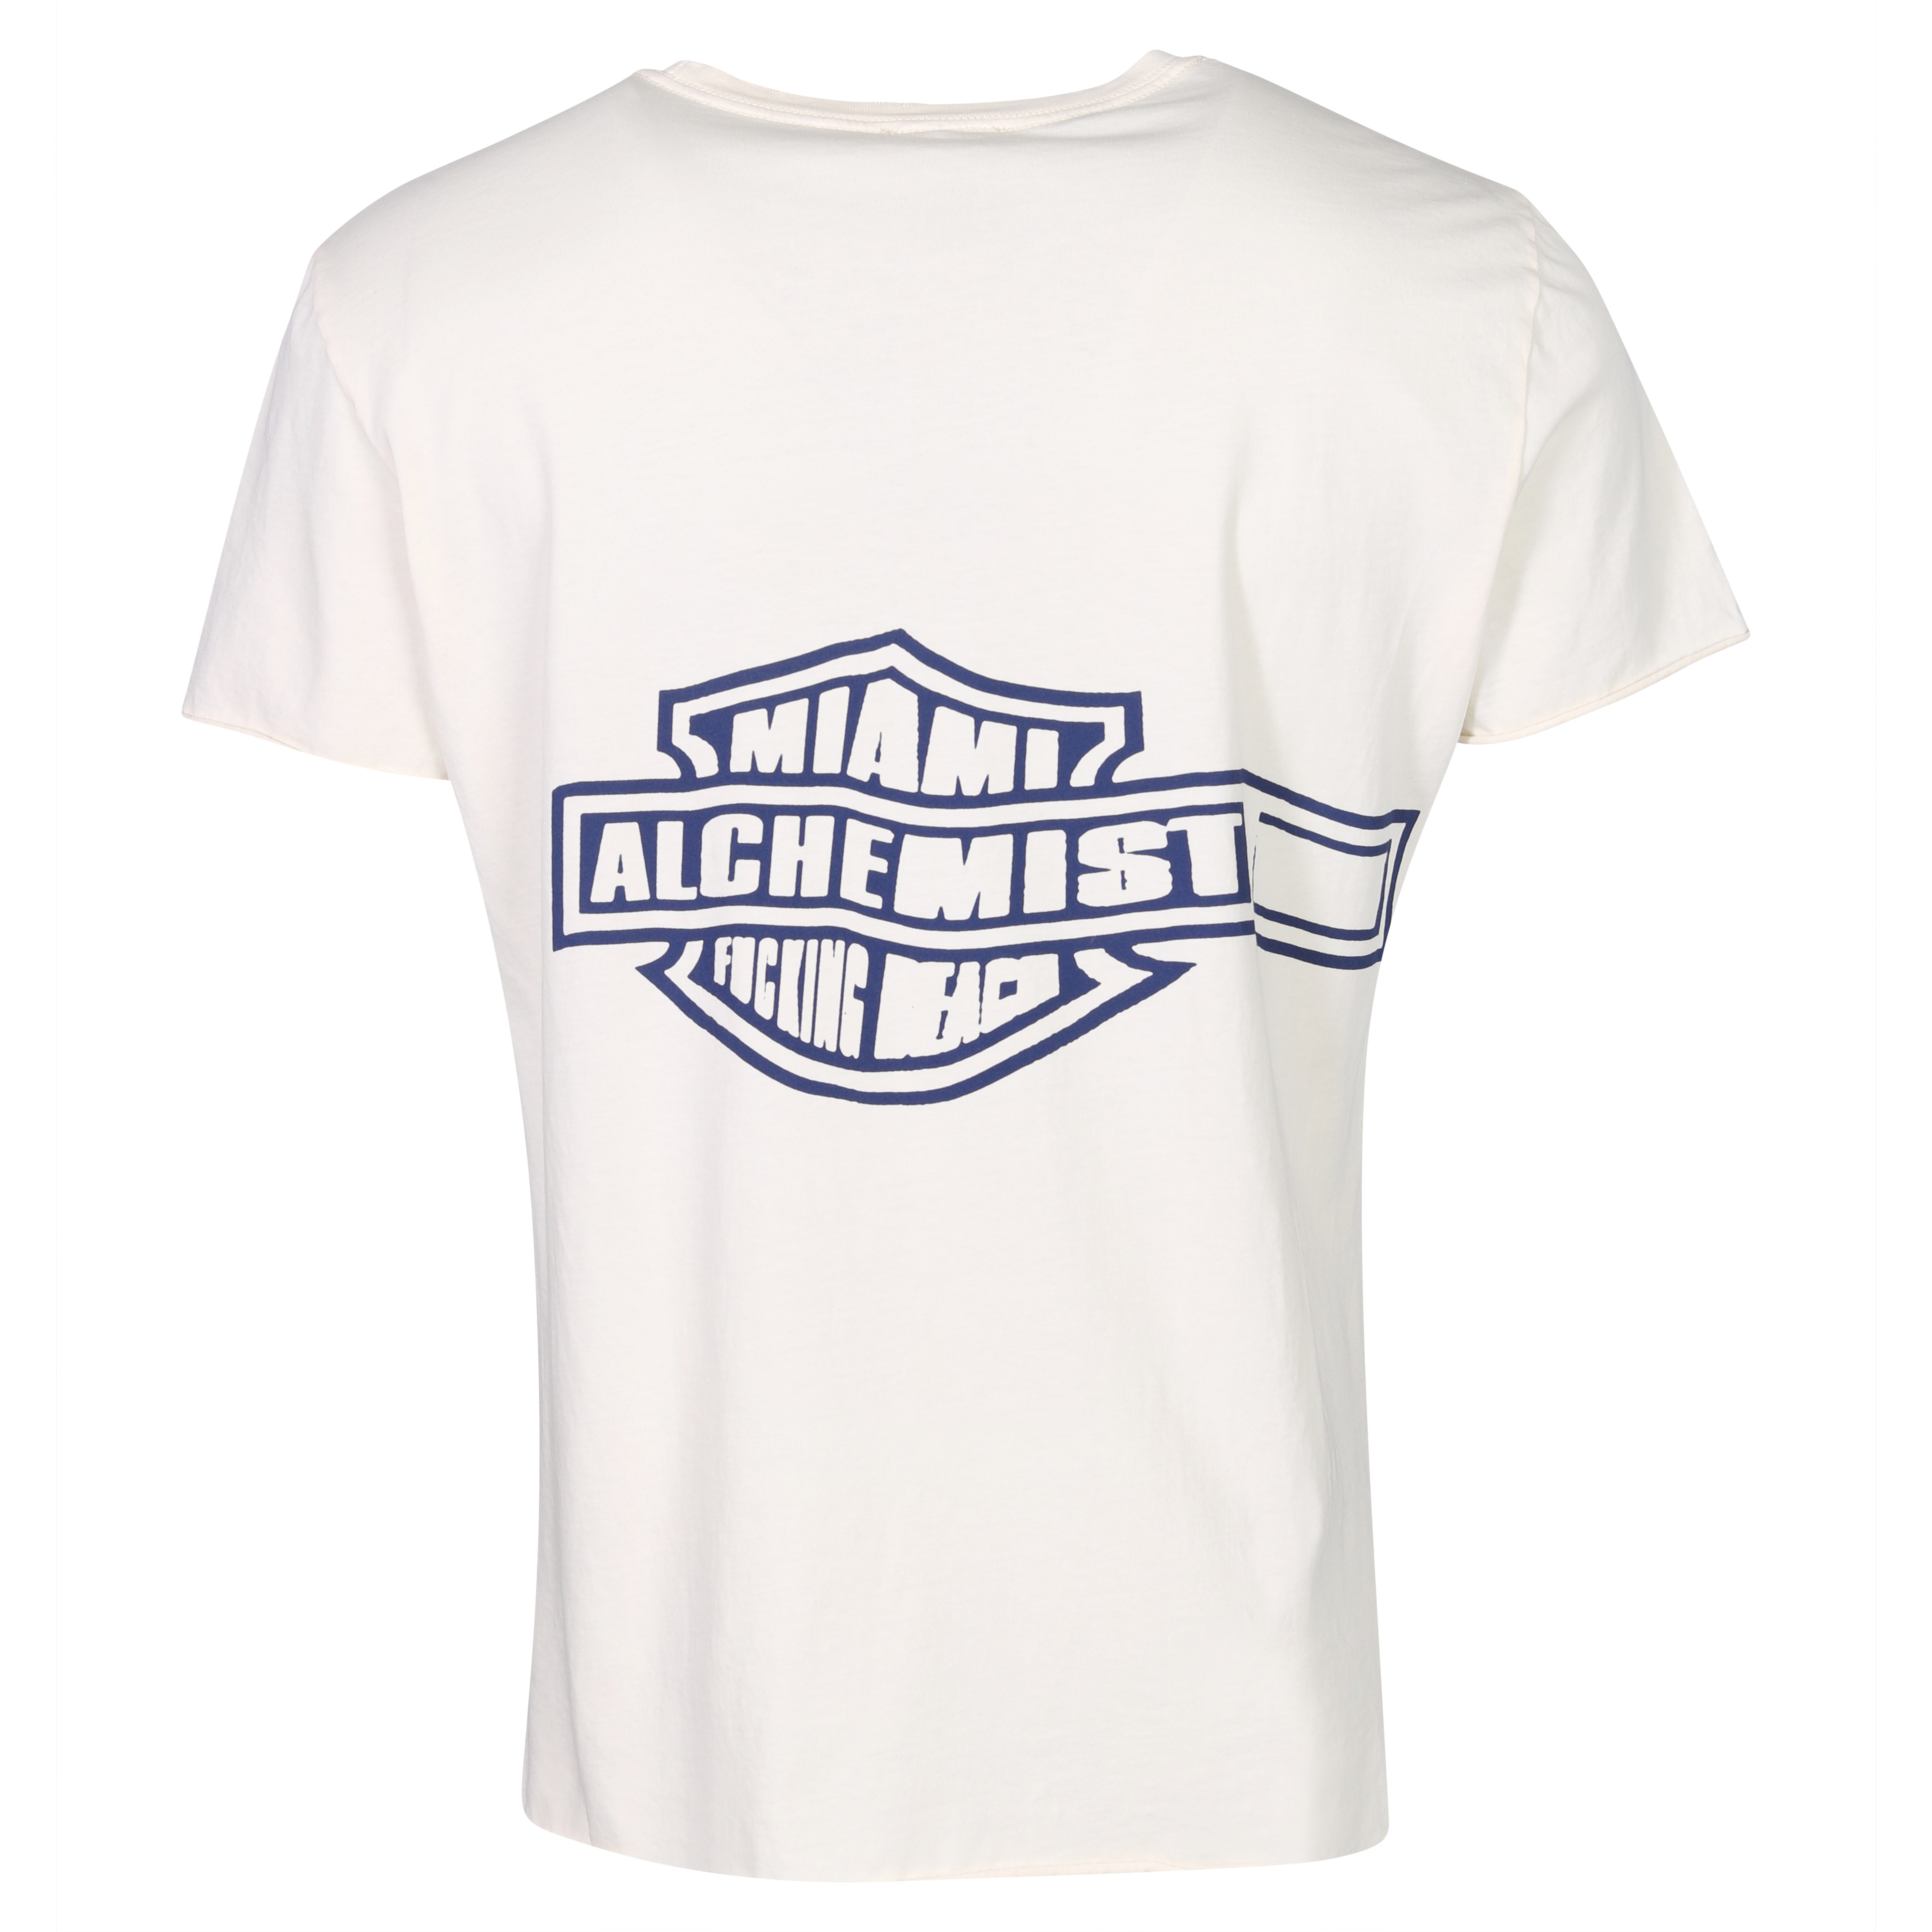 Unisex Alchemist Logan T-Shirt in Creme S